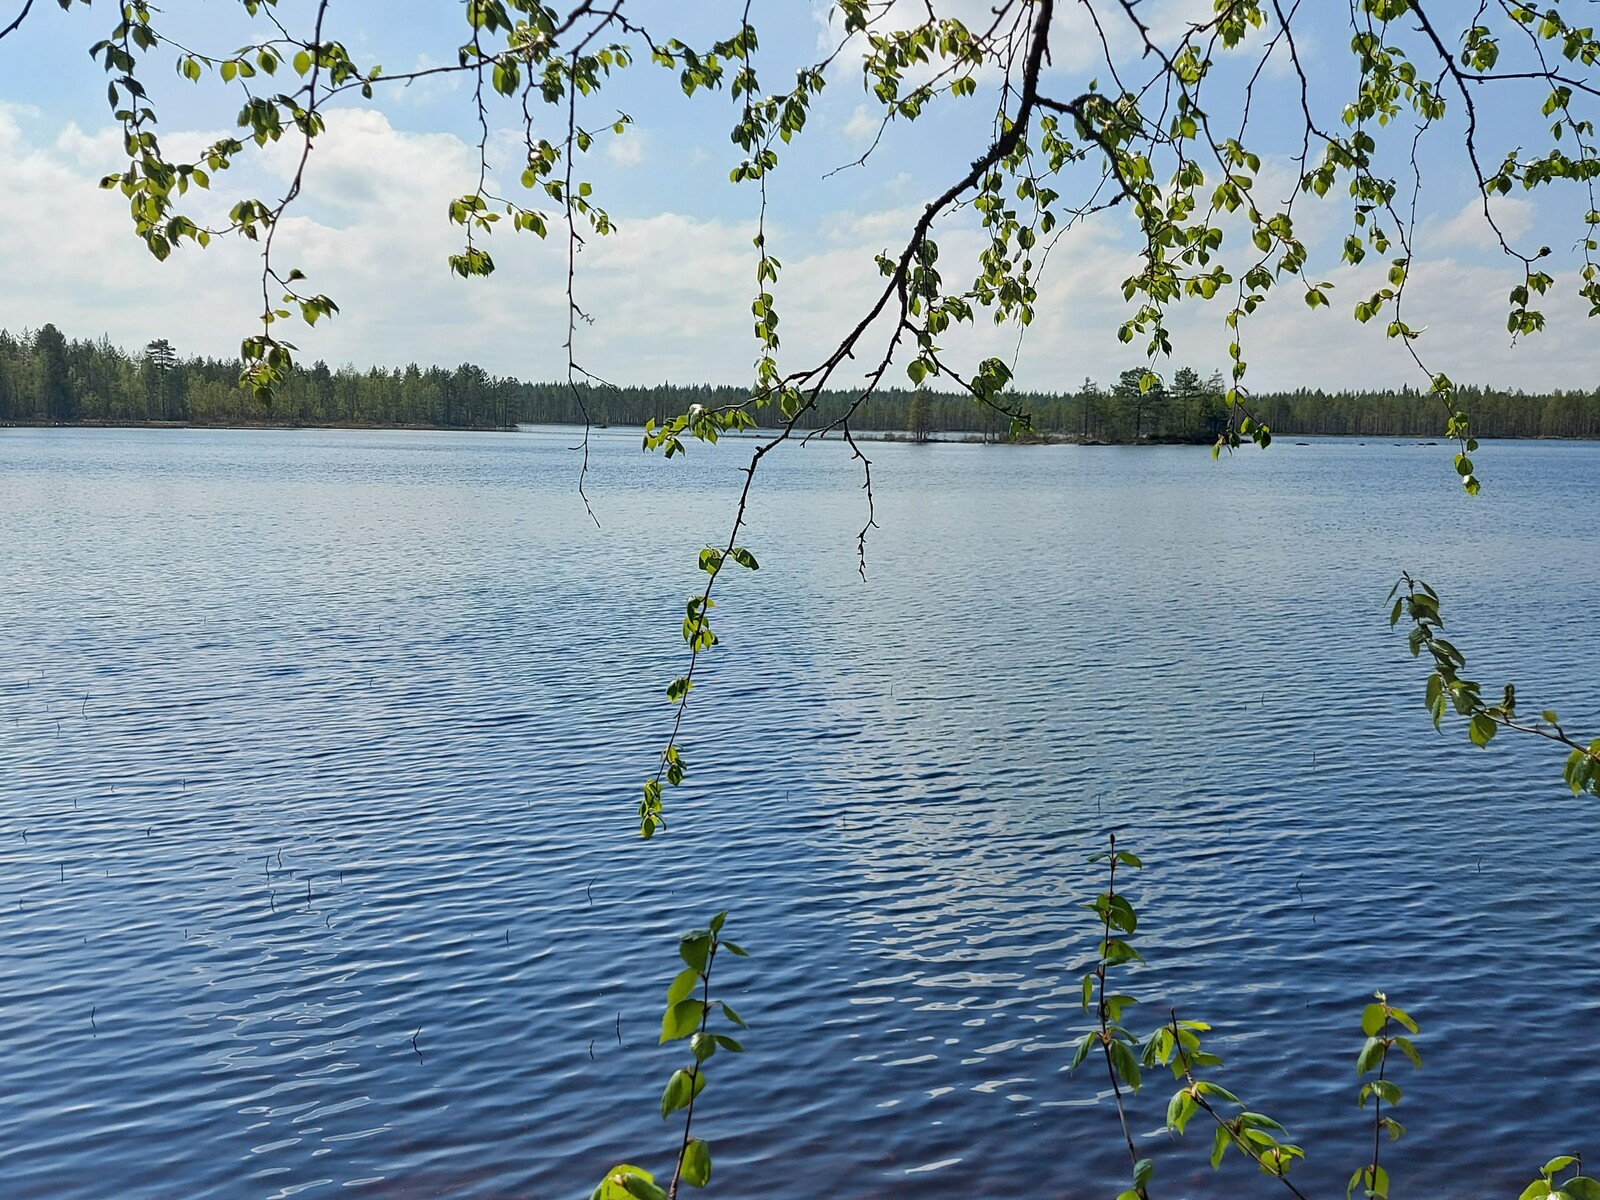 Näkymä järvelle, jossa näkyy saari ja vastarantaa